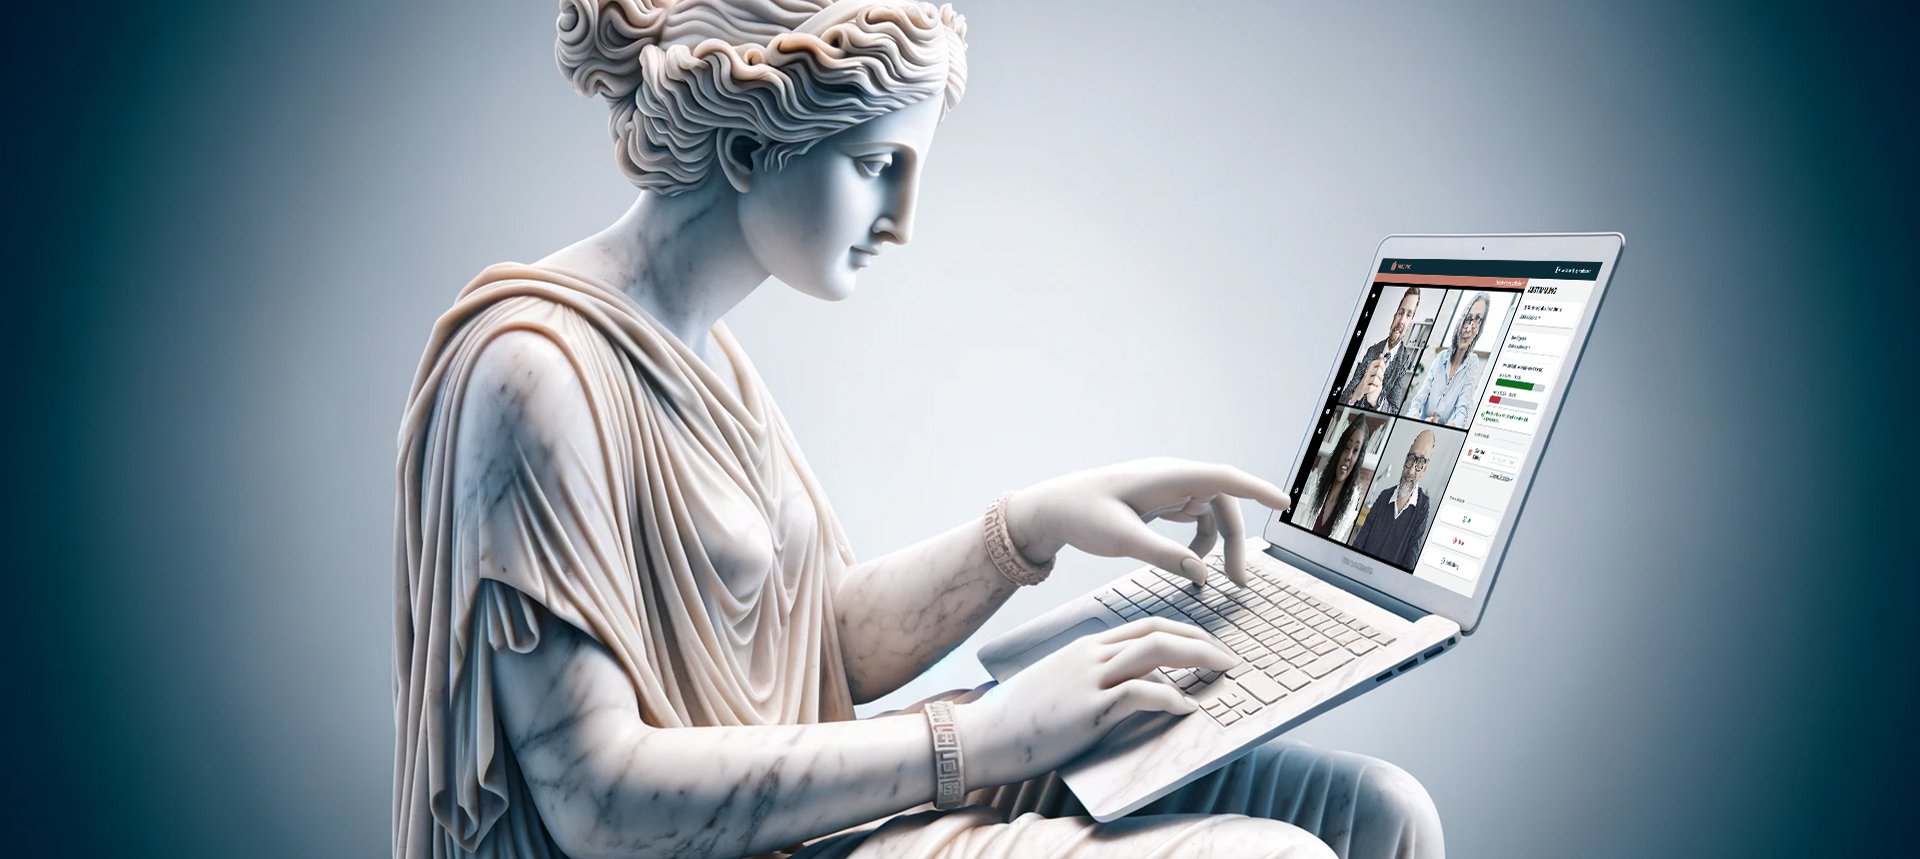 Eine Statue aus Marmor bedient einen Laptop mit einer online Versammlung mit der Software Vulcavo und virtuellen Teilnehmern in einer Videokonferenz